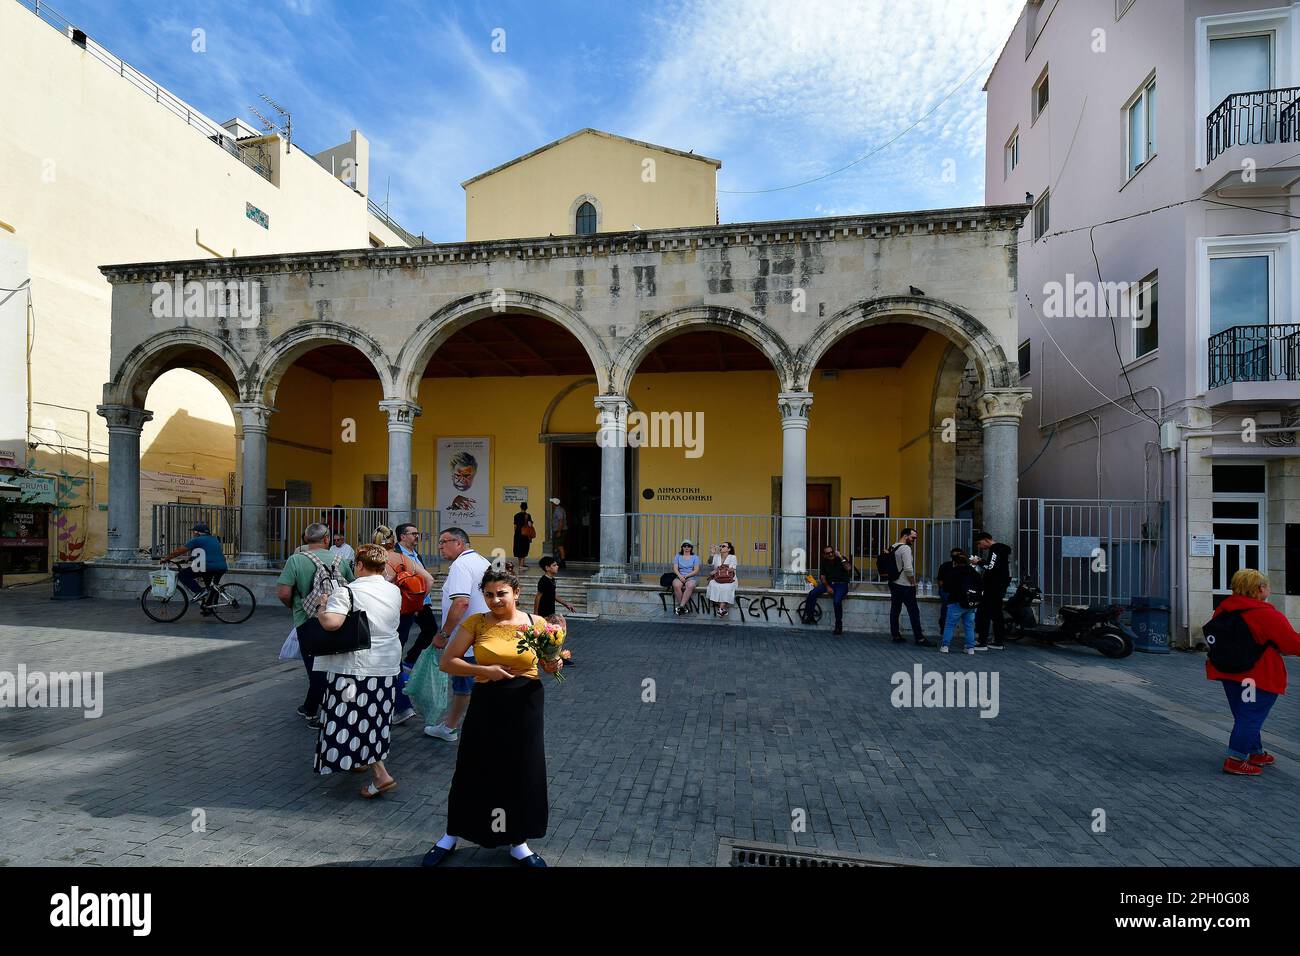 Iraklio, Grecia - 14 ottobre 2022: La capitale dell'isola di Creta, persone non identificate e sala d'arte comunale costruita in stile veneziano - una ex chiesa Foto Stock